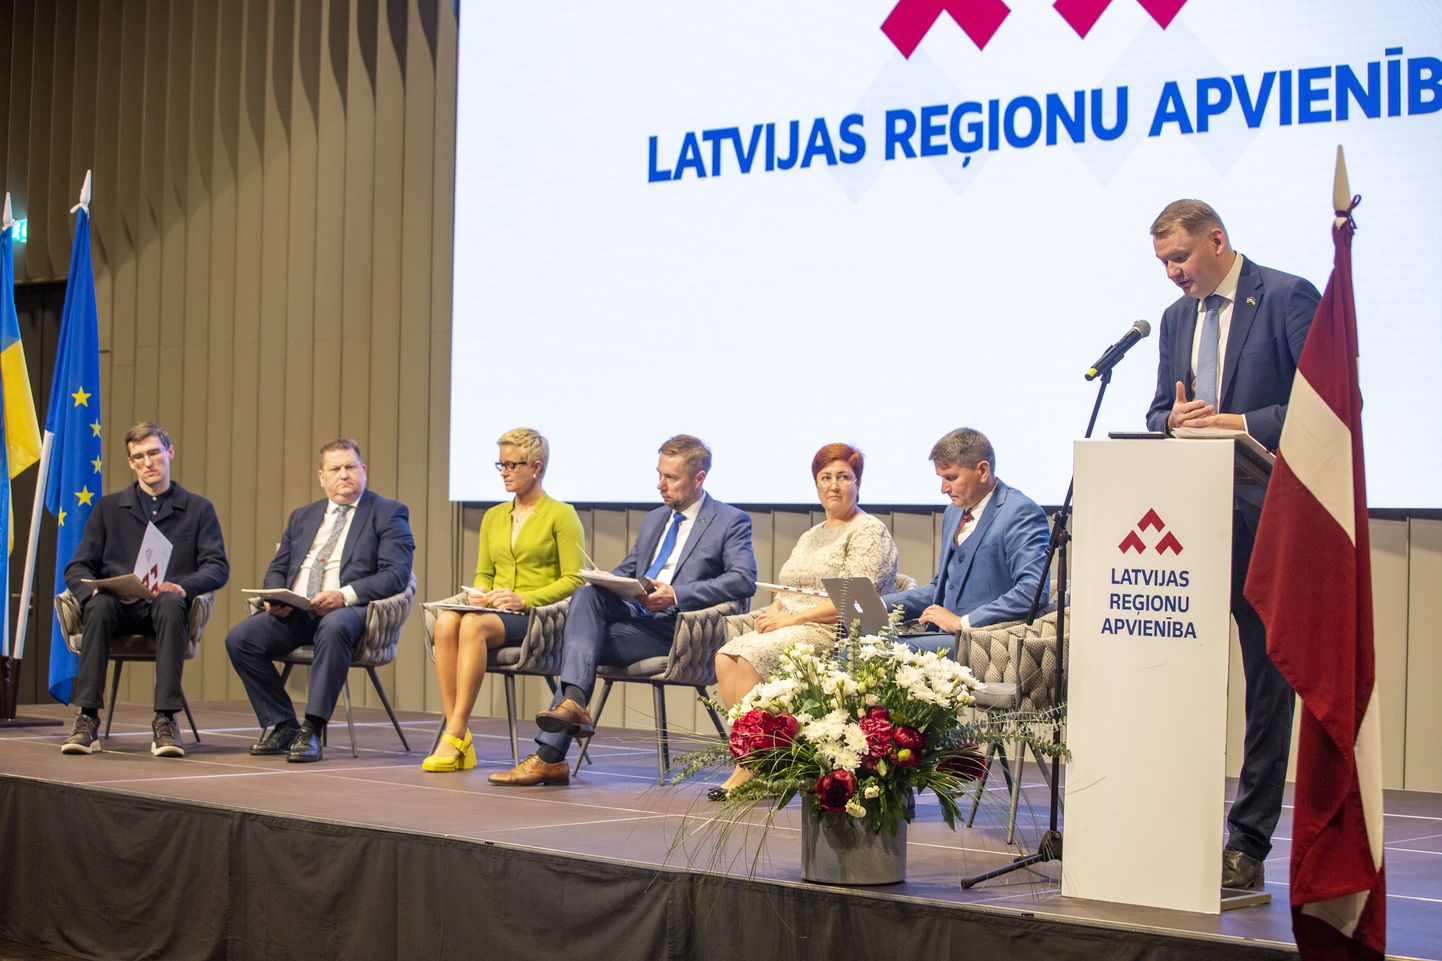 Latvijas Reģionu apvienības valdes priekšsēdētājs Edvards Smiltēns uzrunā klātesošos partijas kongresā, kurā tiek iezīmēts partijas politiskais un ekonomiskais piedāvājums Saeimas vēlēšanās.